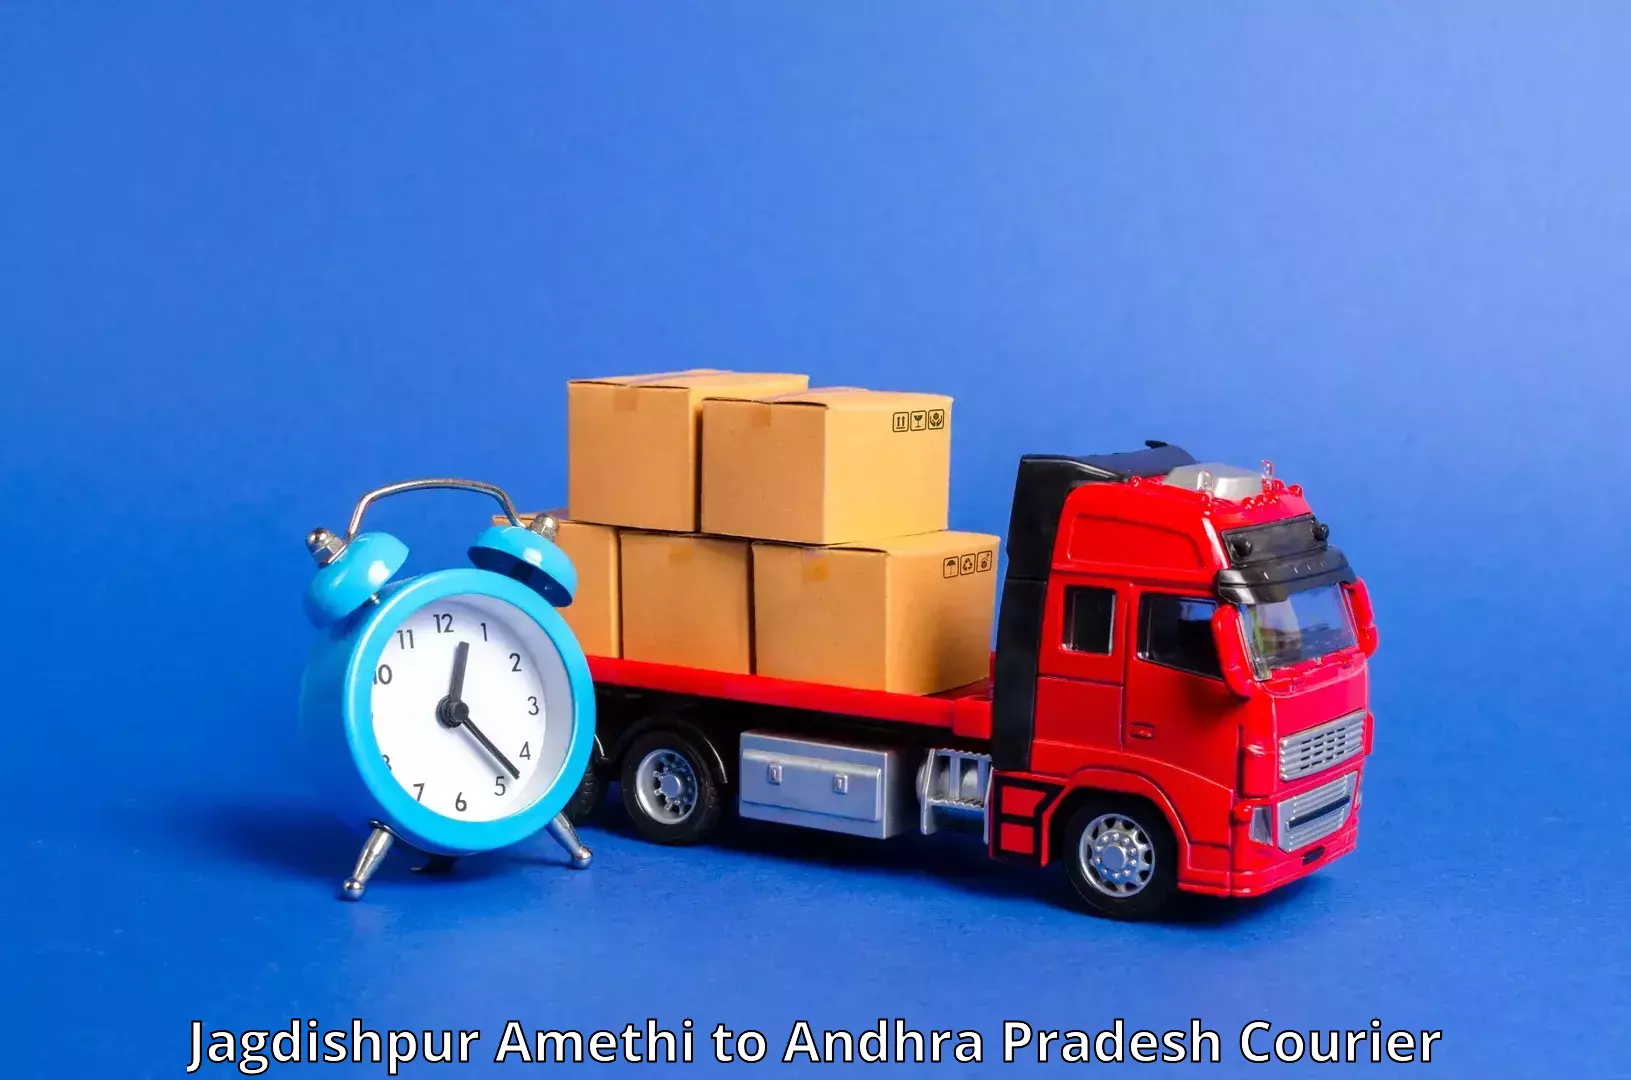 High-performance logistics Jagdishpur Amethi to Prakasam